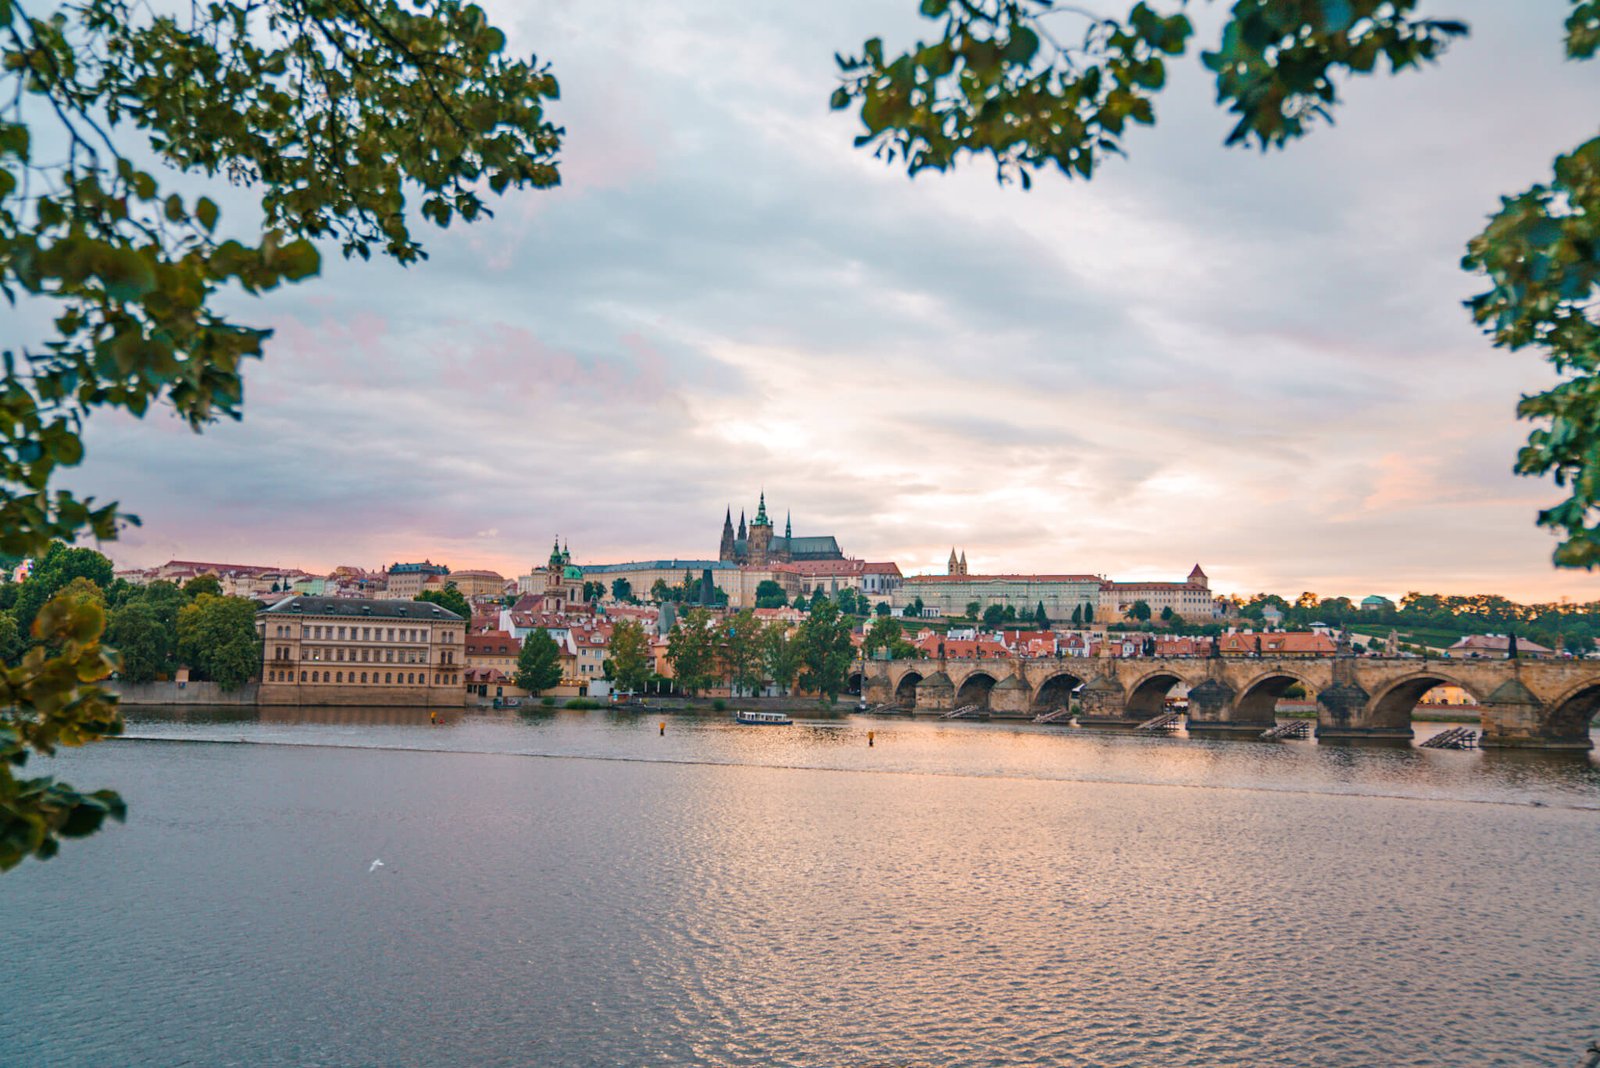 Prague in 1 day